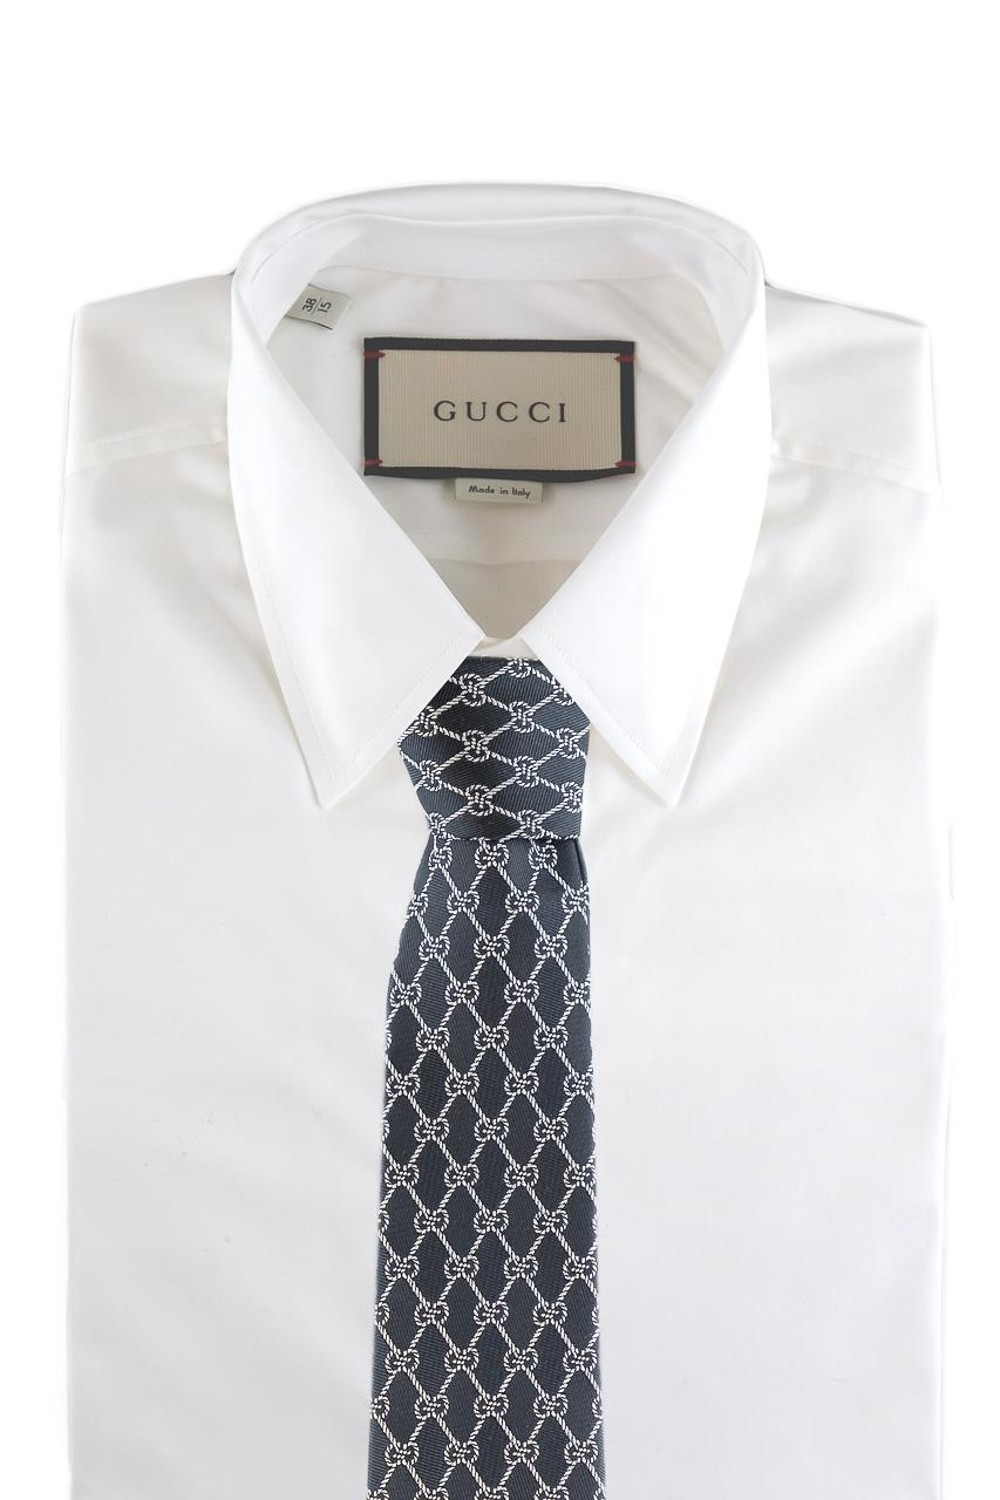 shop GUCCI Sales Cravatta: Gucci cravatta in seta nera motivo catene GG avorio.
L 7cm x A 146cm.
100% seta.
Made in Italy.. 495312 4E002-1078 number 2488119